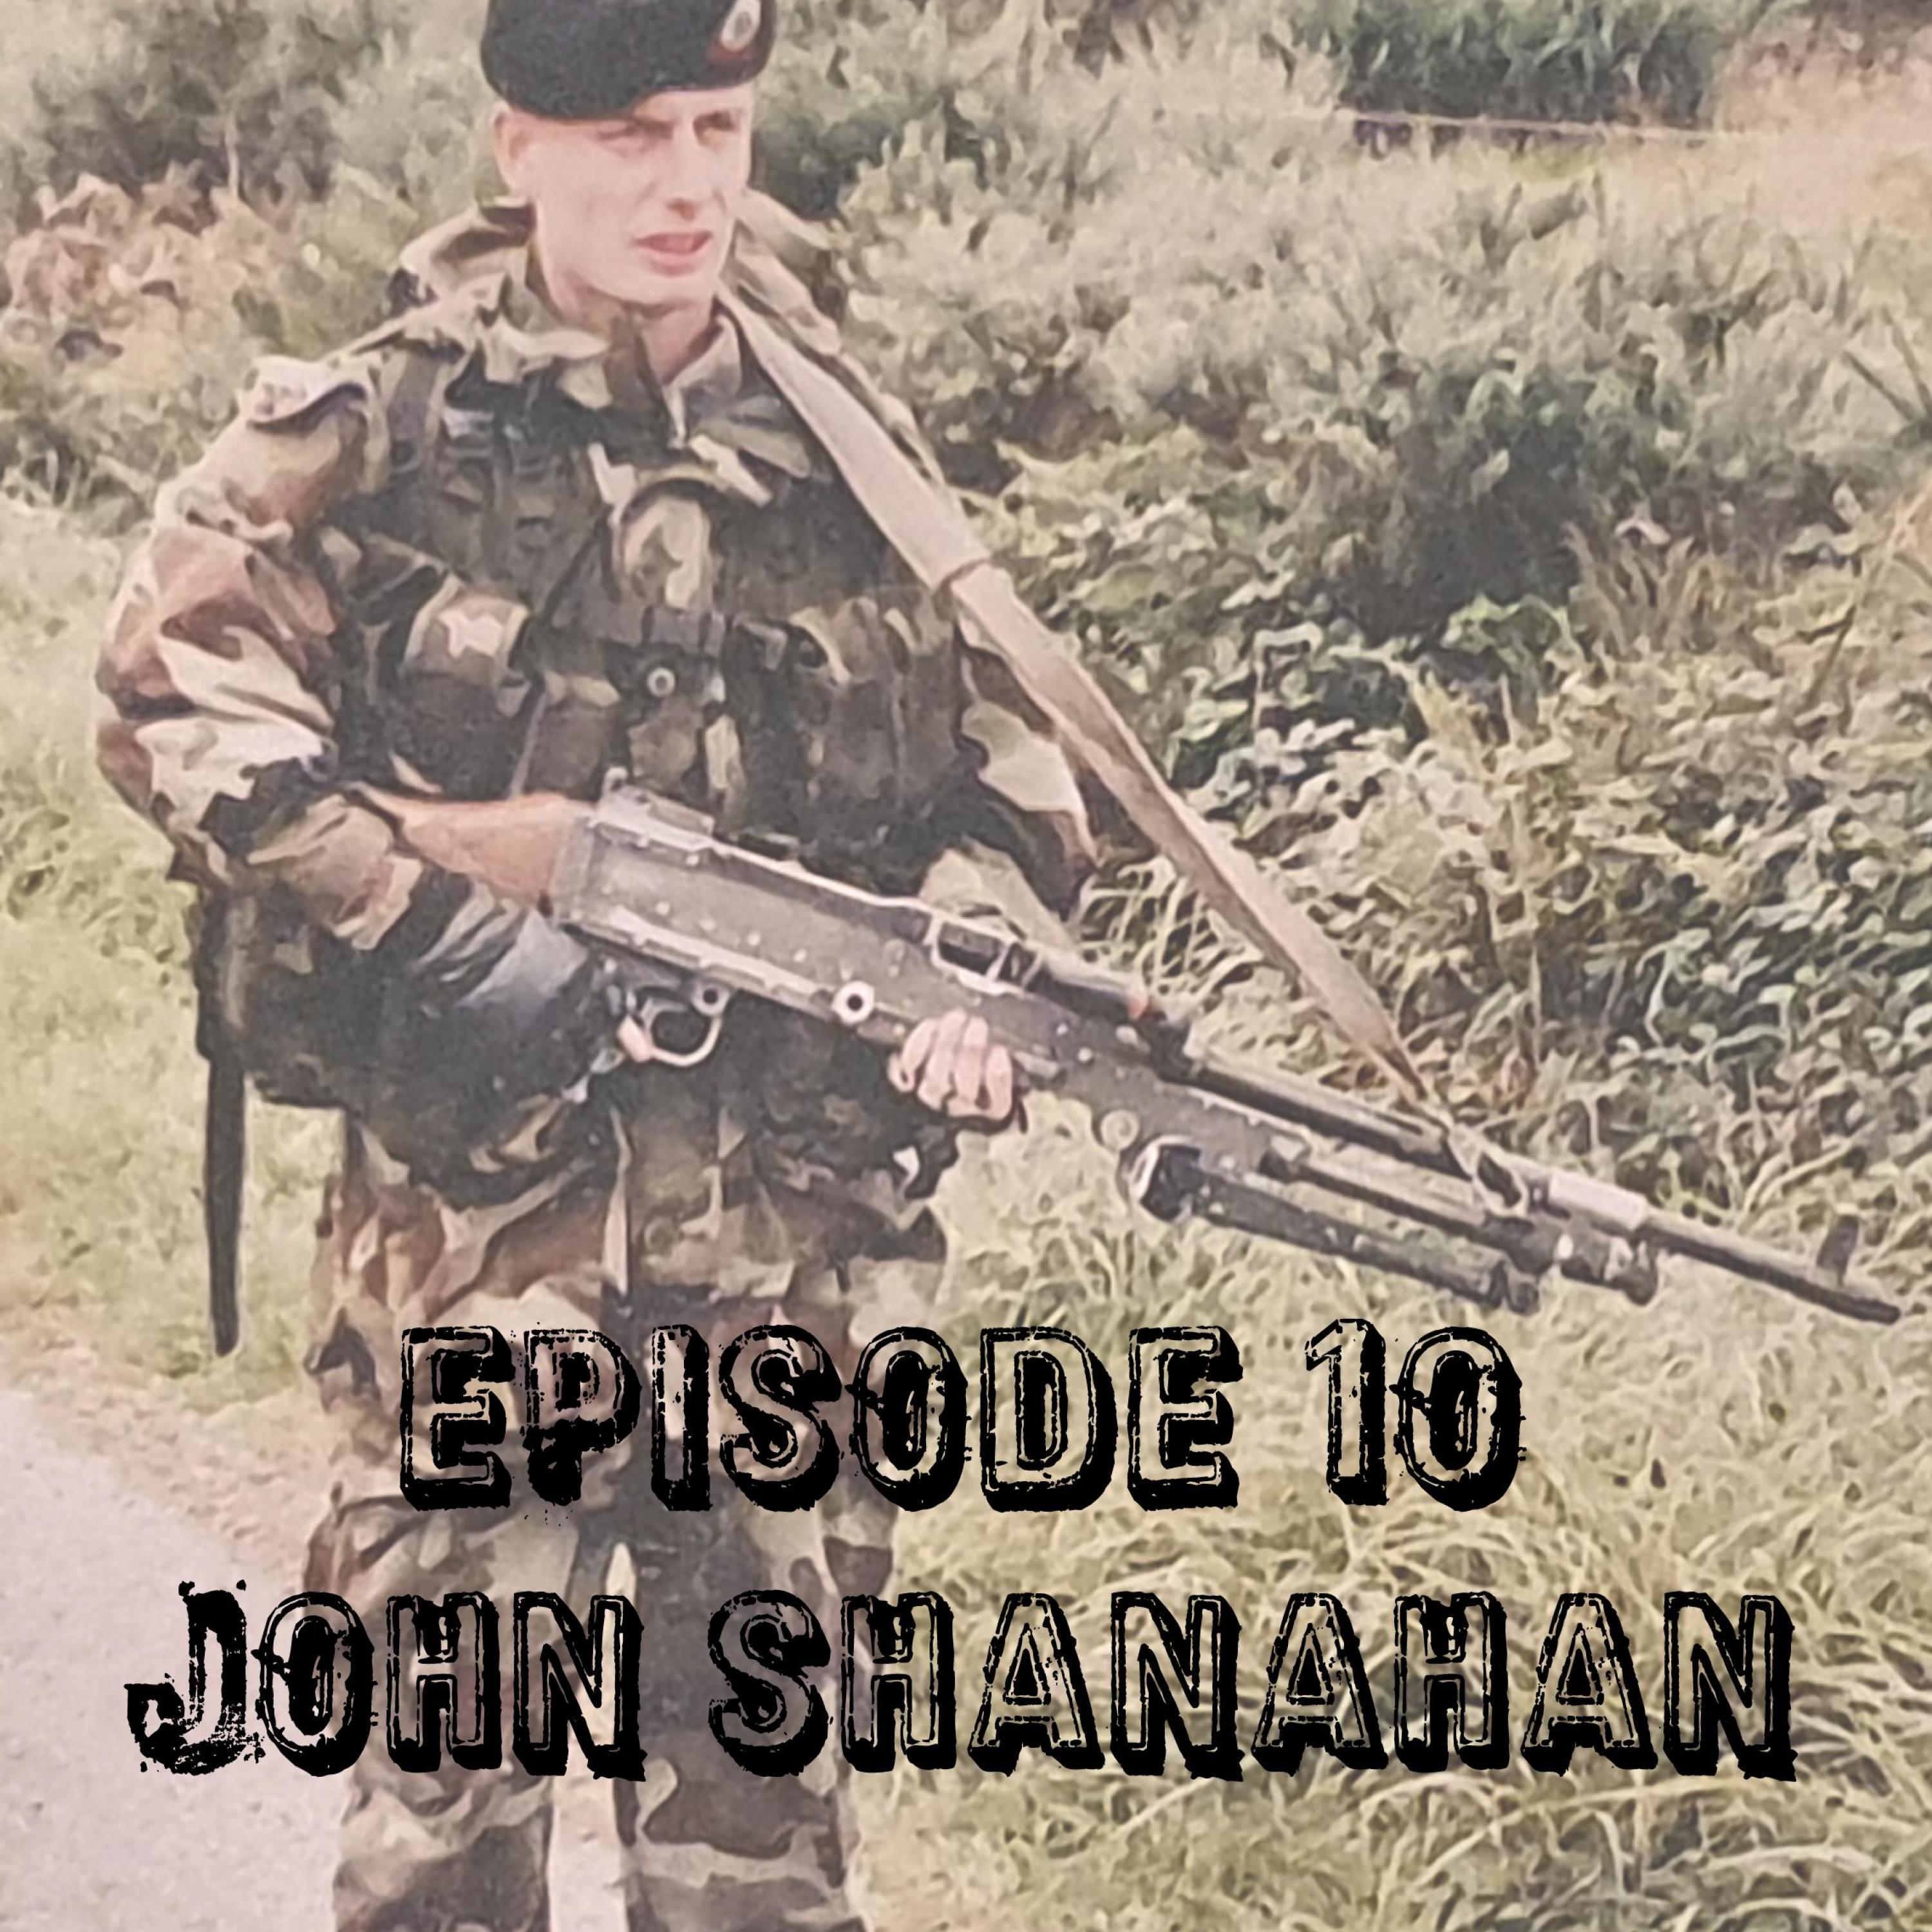 10. John Shanahan